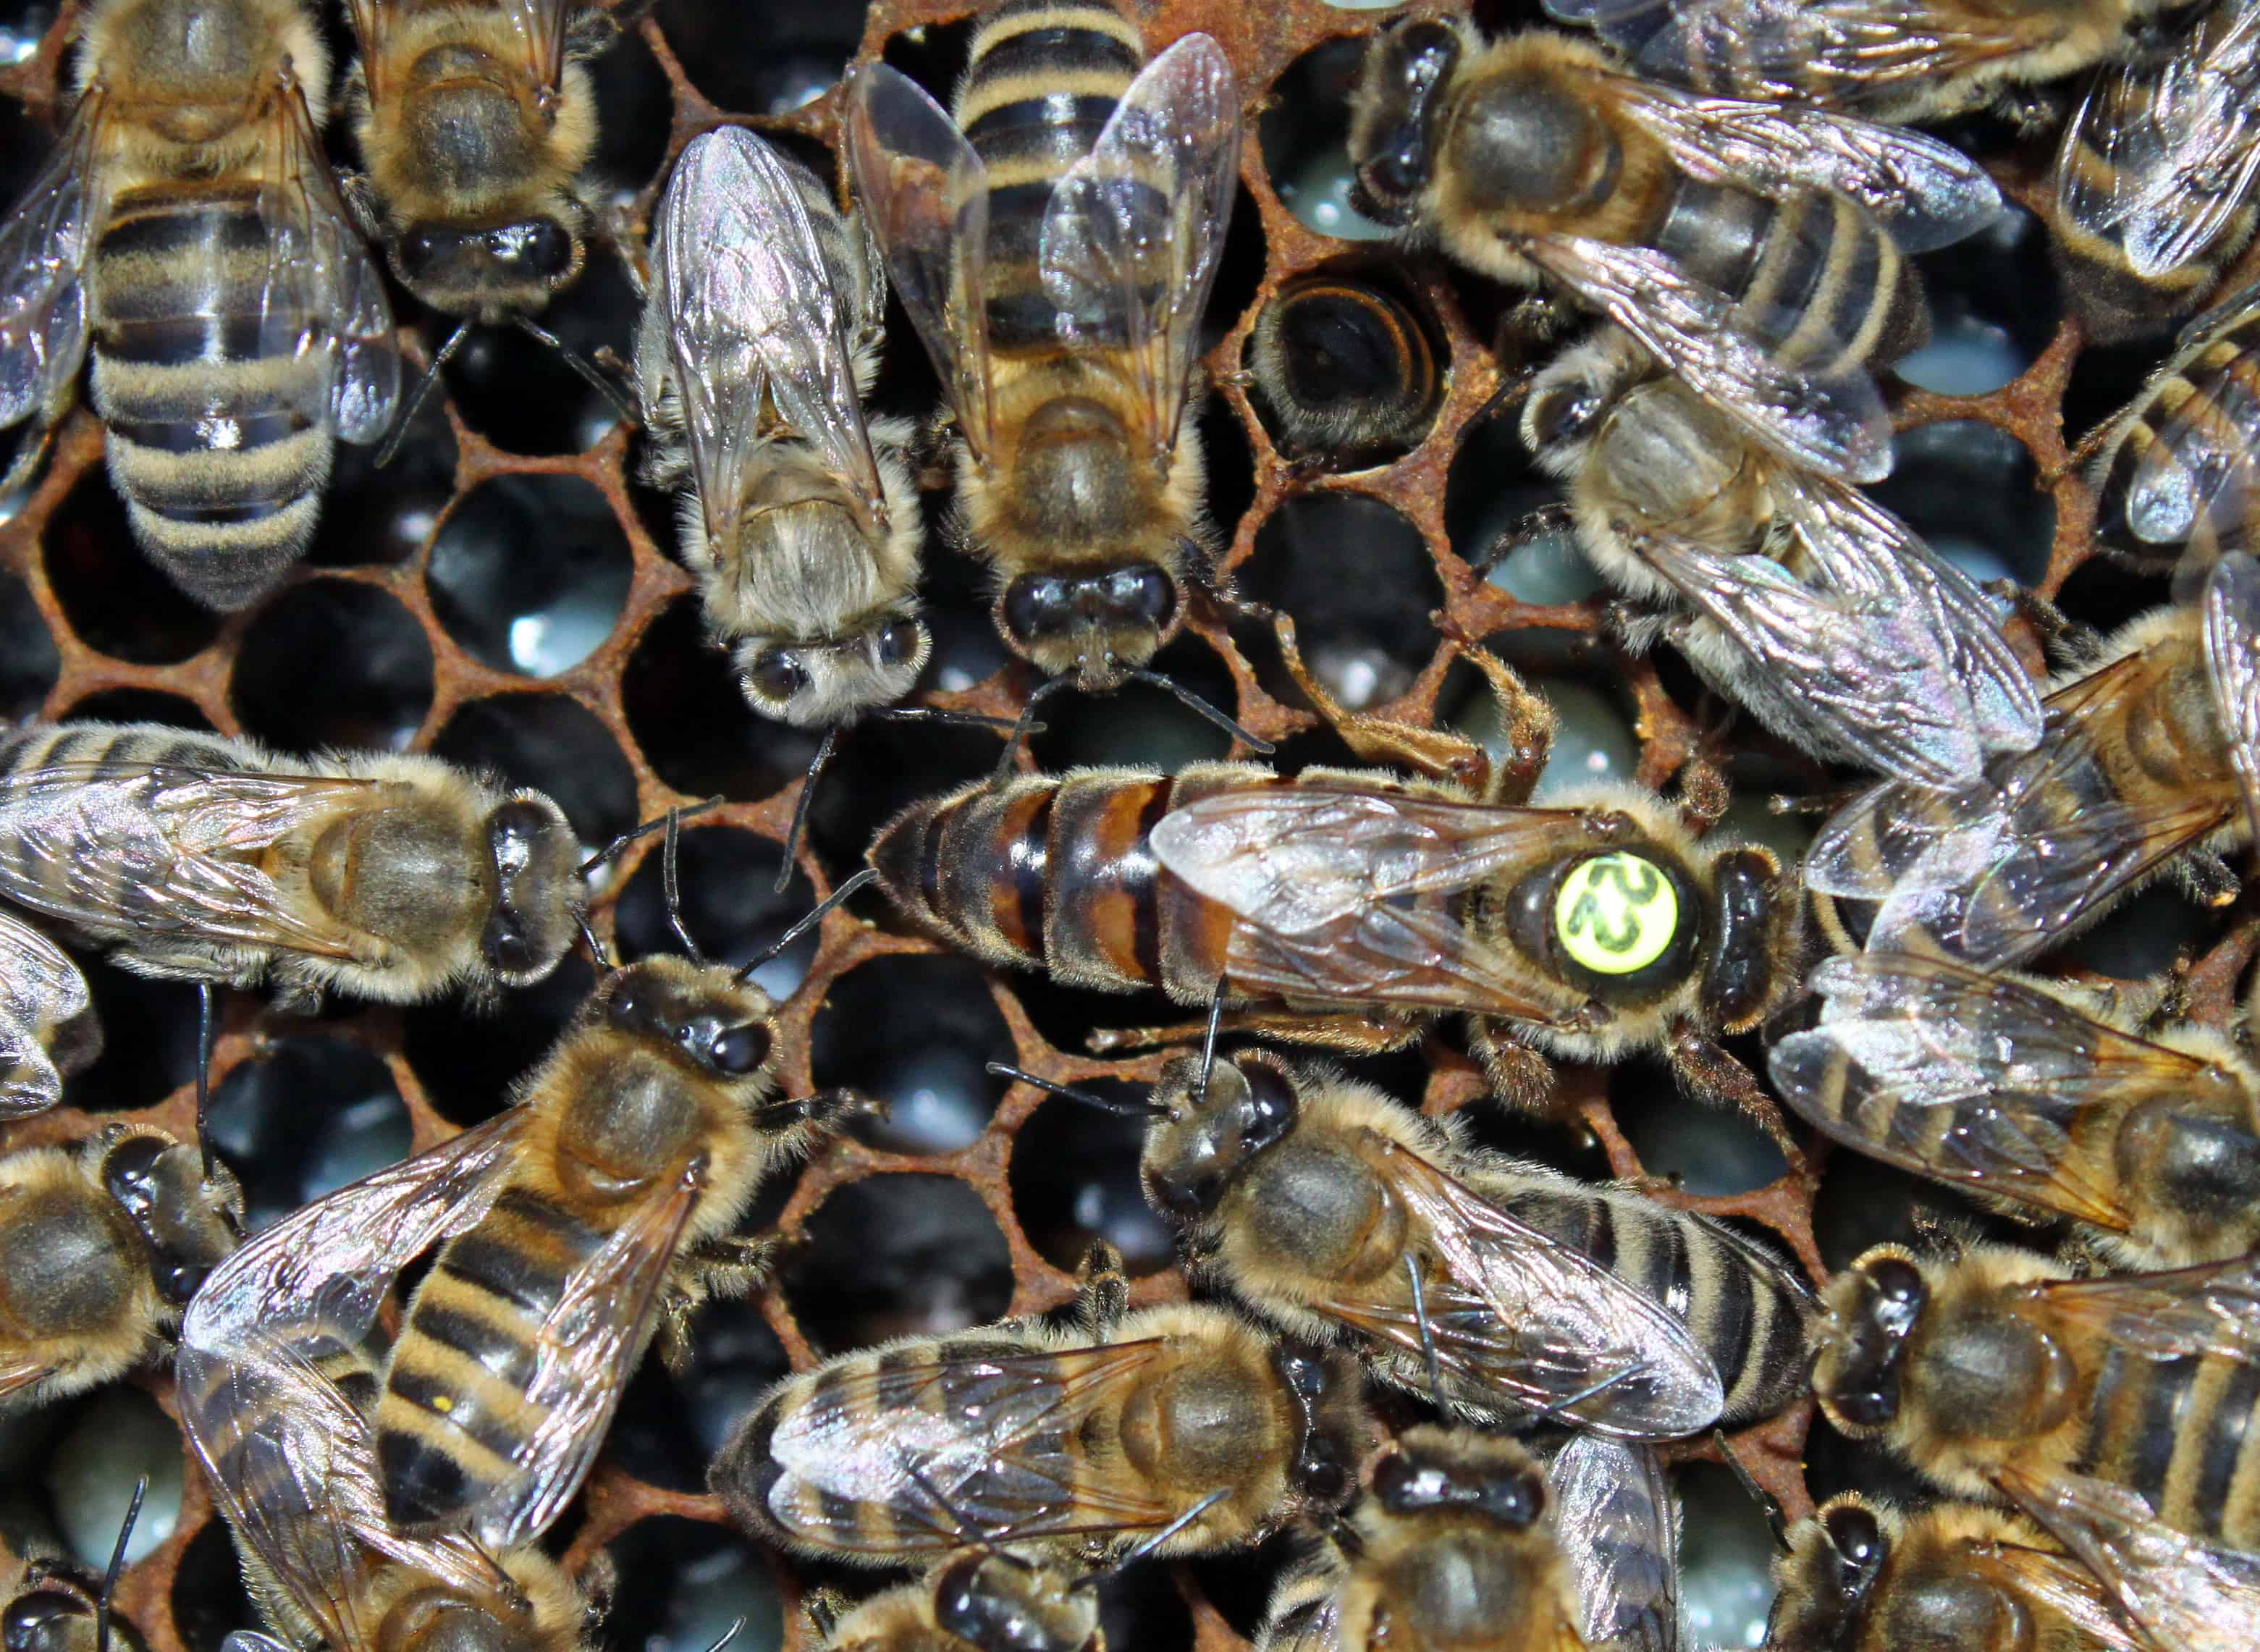 Carniolan Bees